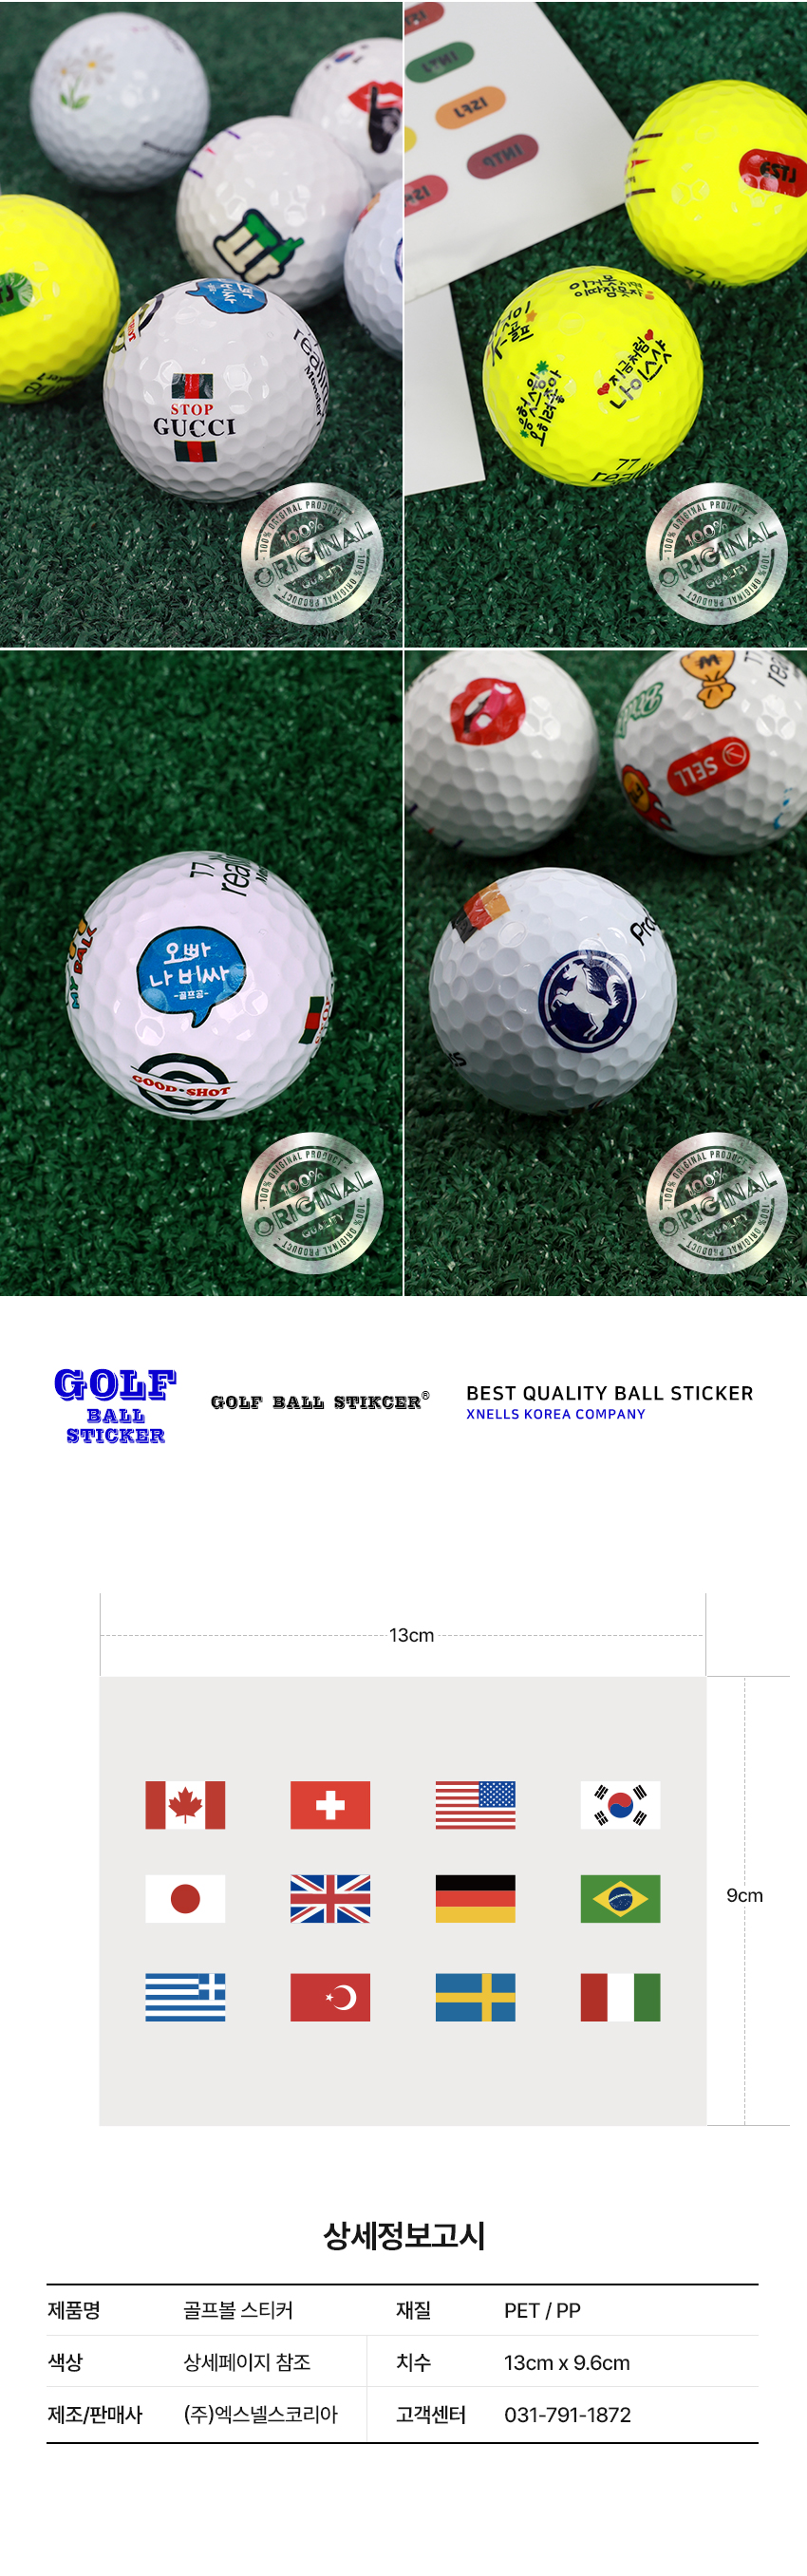 golf_ball_sticker_detail_02.jpg